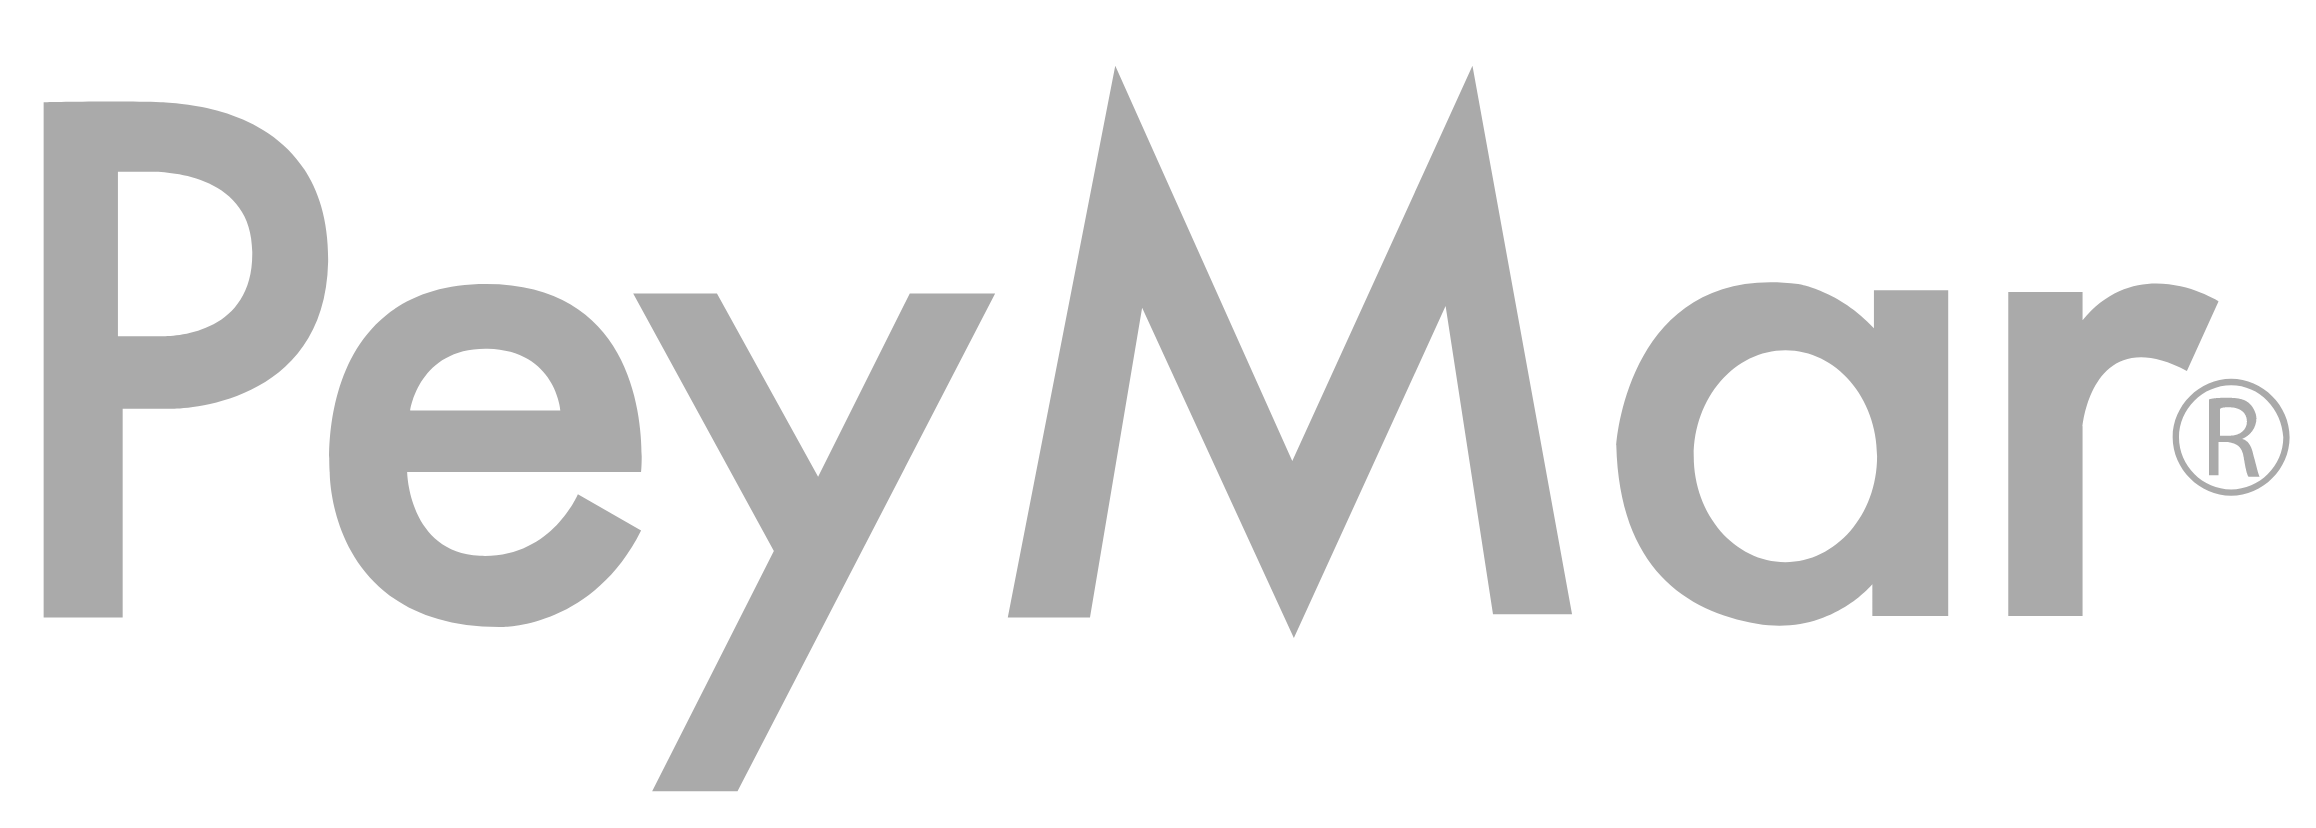 Peymar Logo 2020